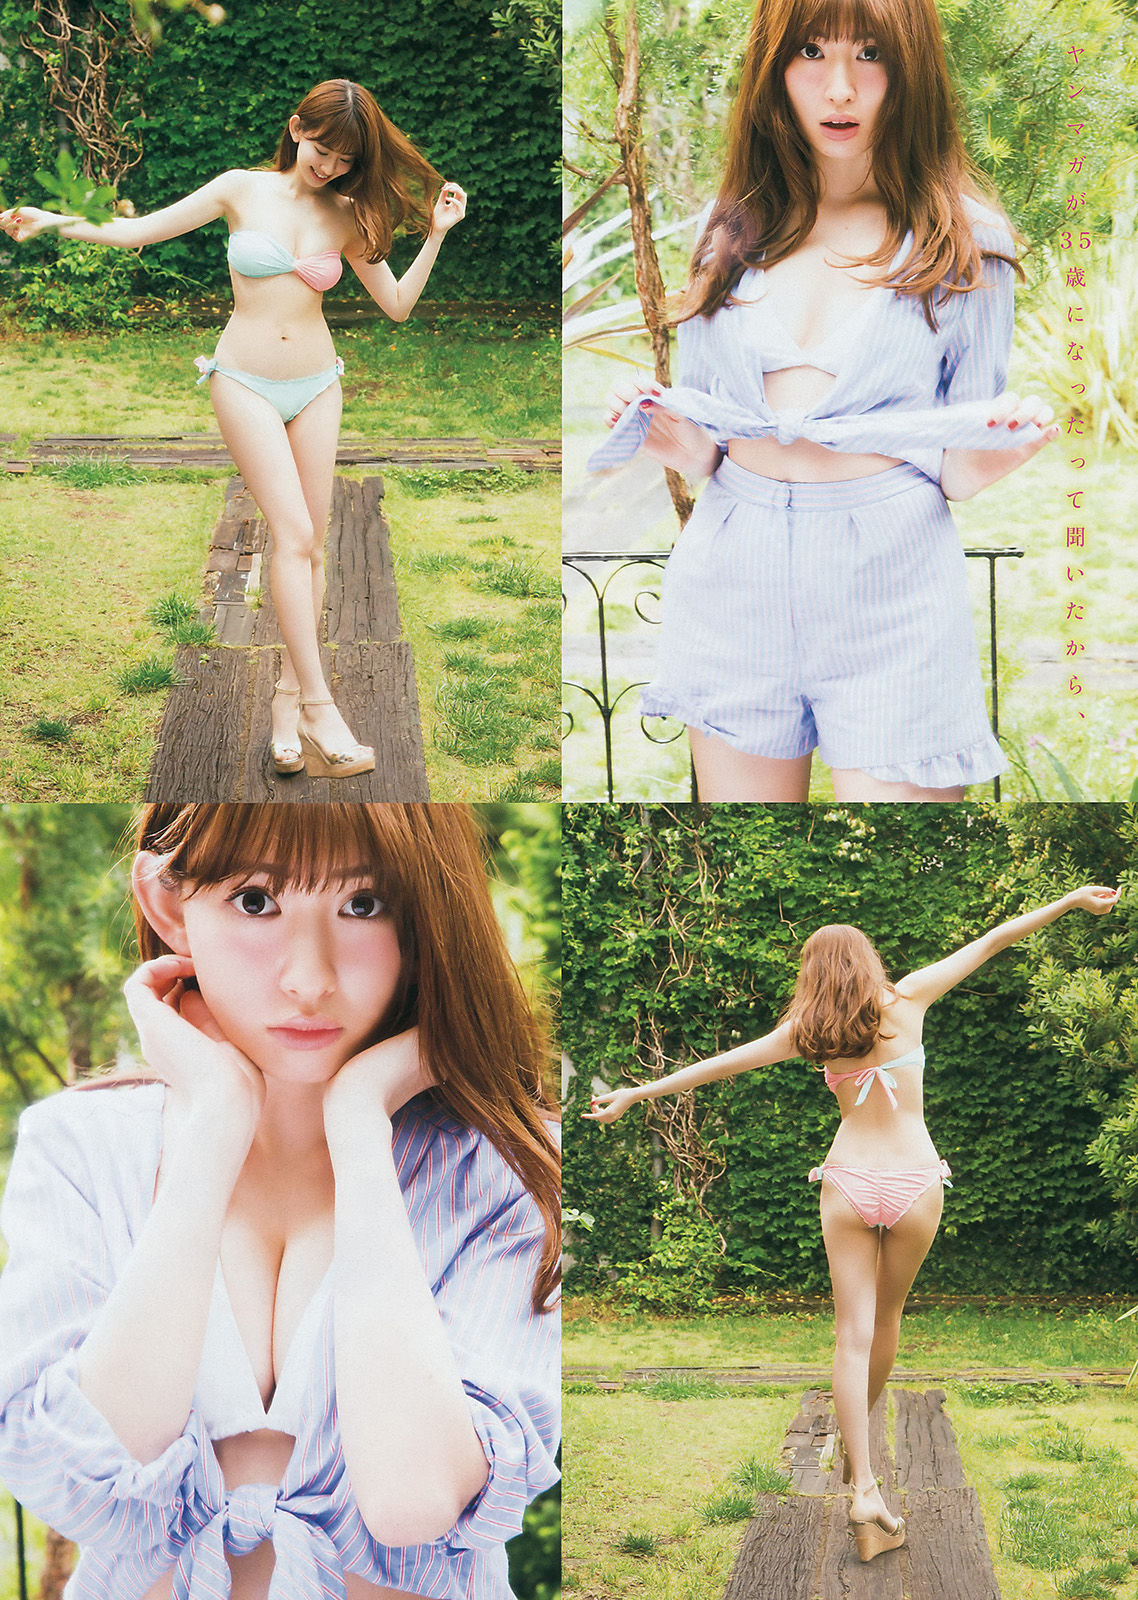 [Young Magazine]日本嫩模:小岛阳菜无圣光私房照片在线浏览(12P)